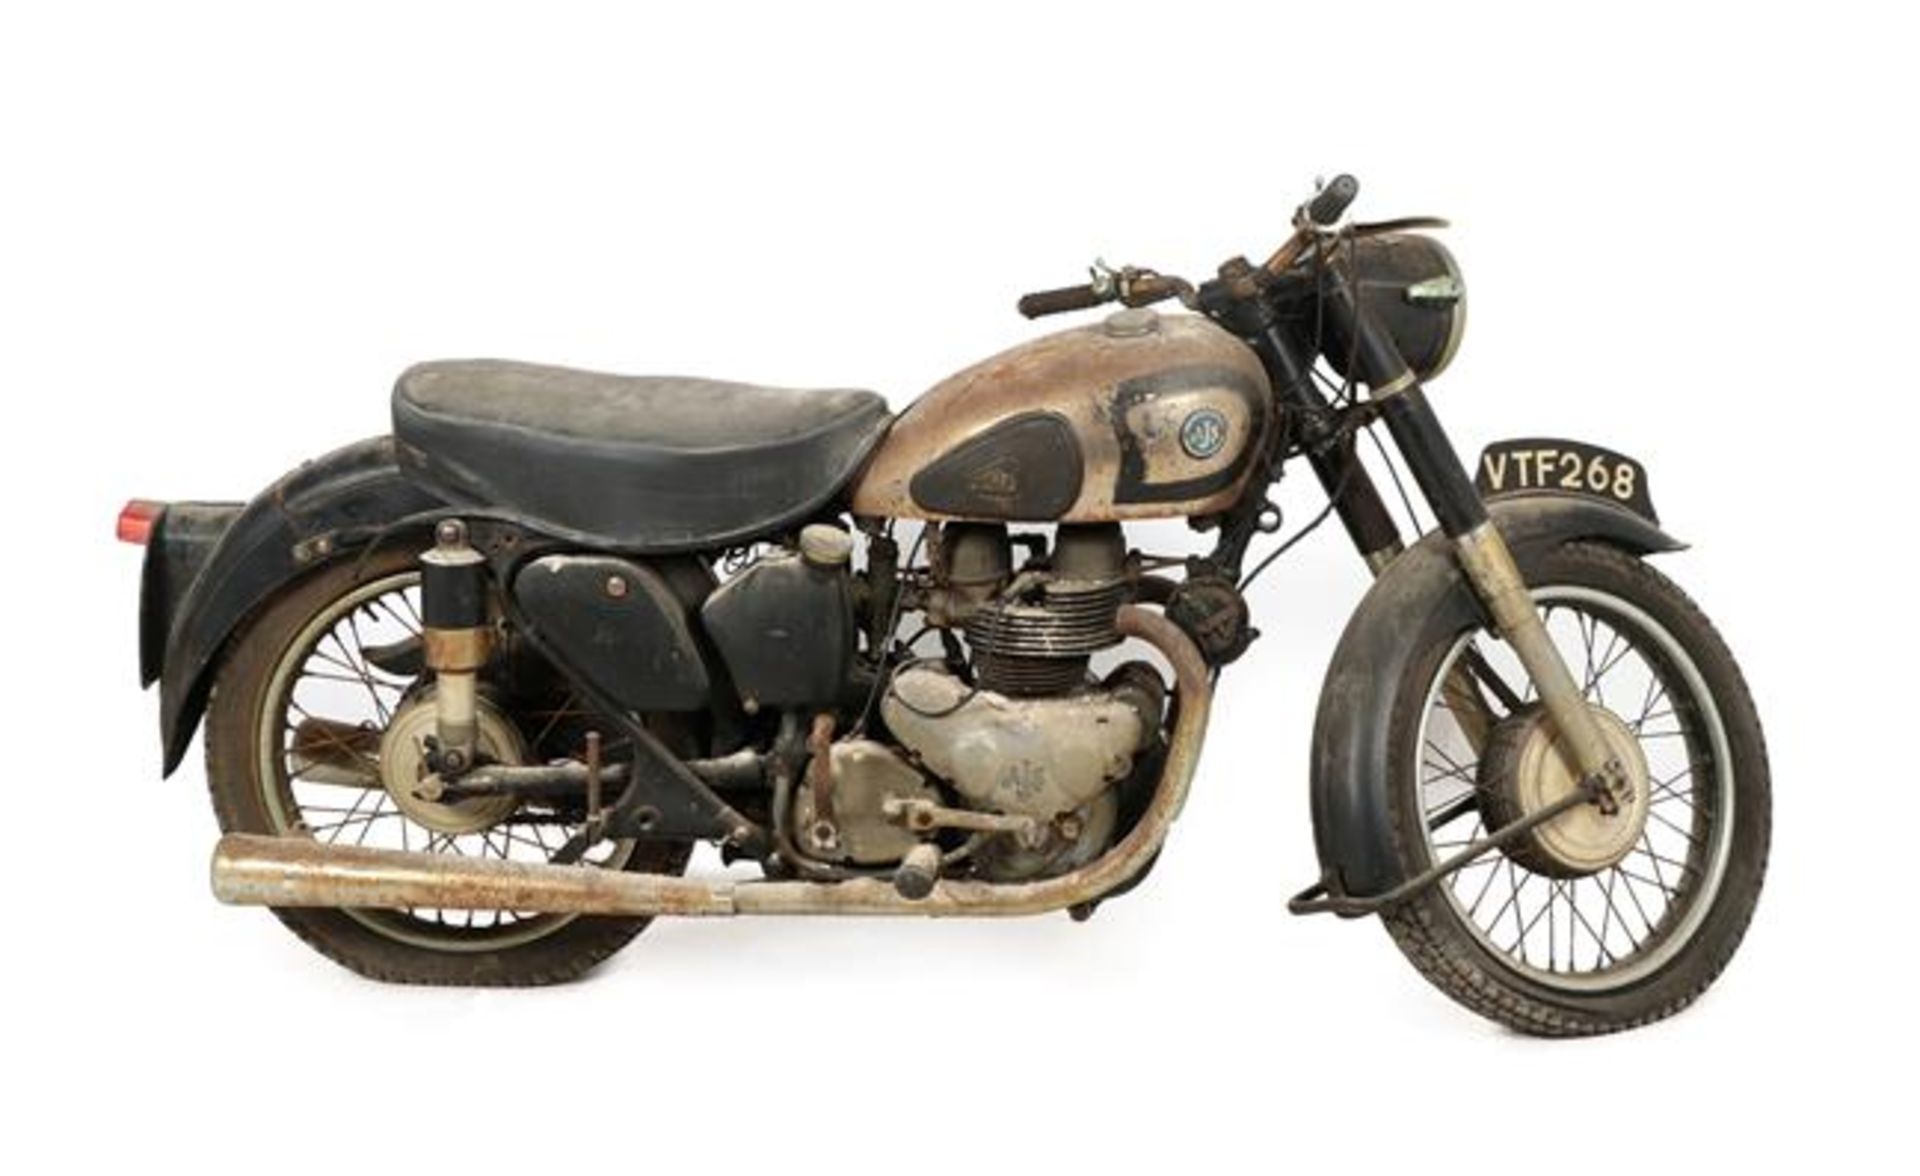 ~ 1955 AJS M20 Motorcycle Registration number: VTF 268 Date of first registration: N/A Frame number: